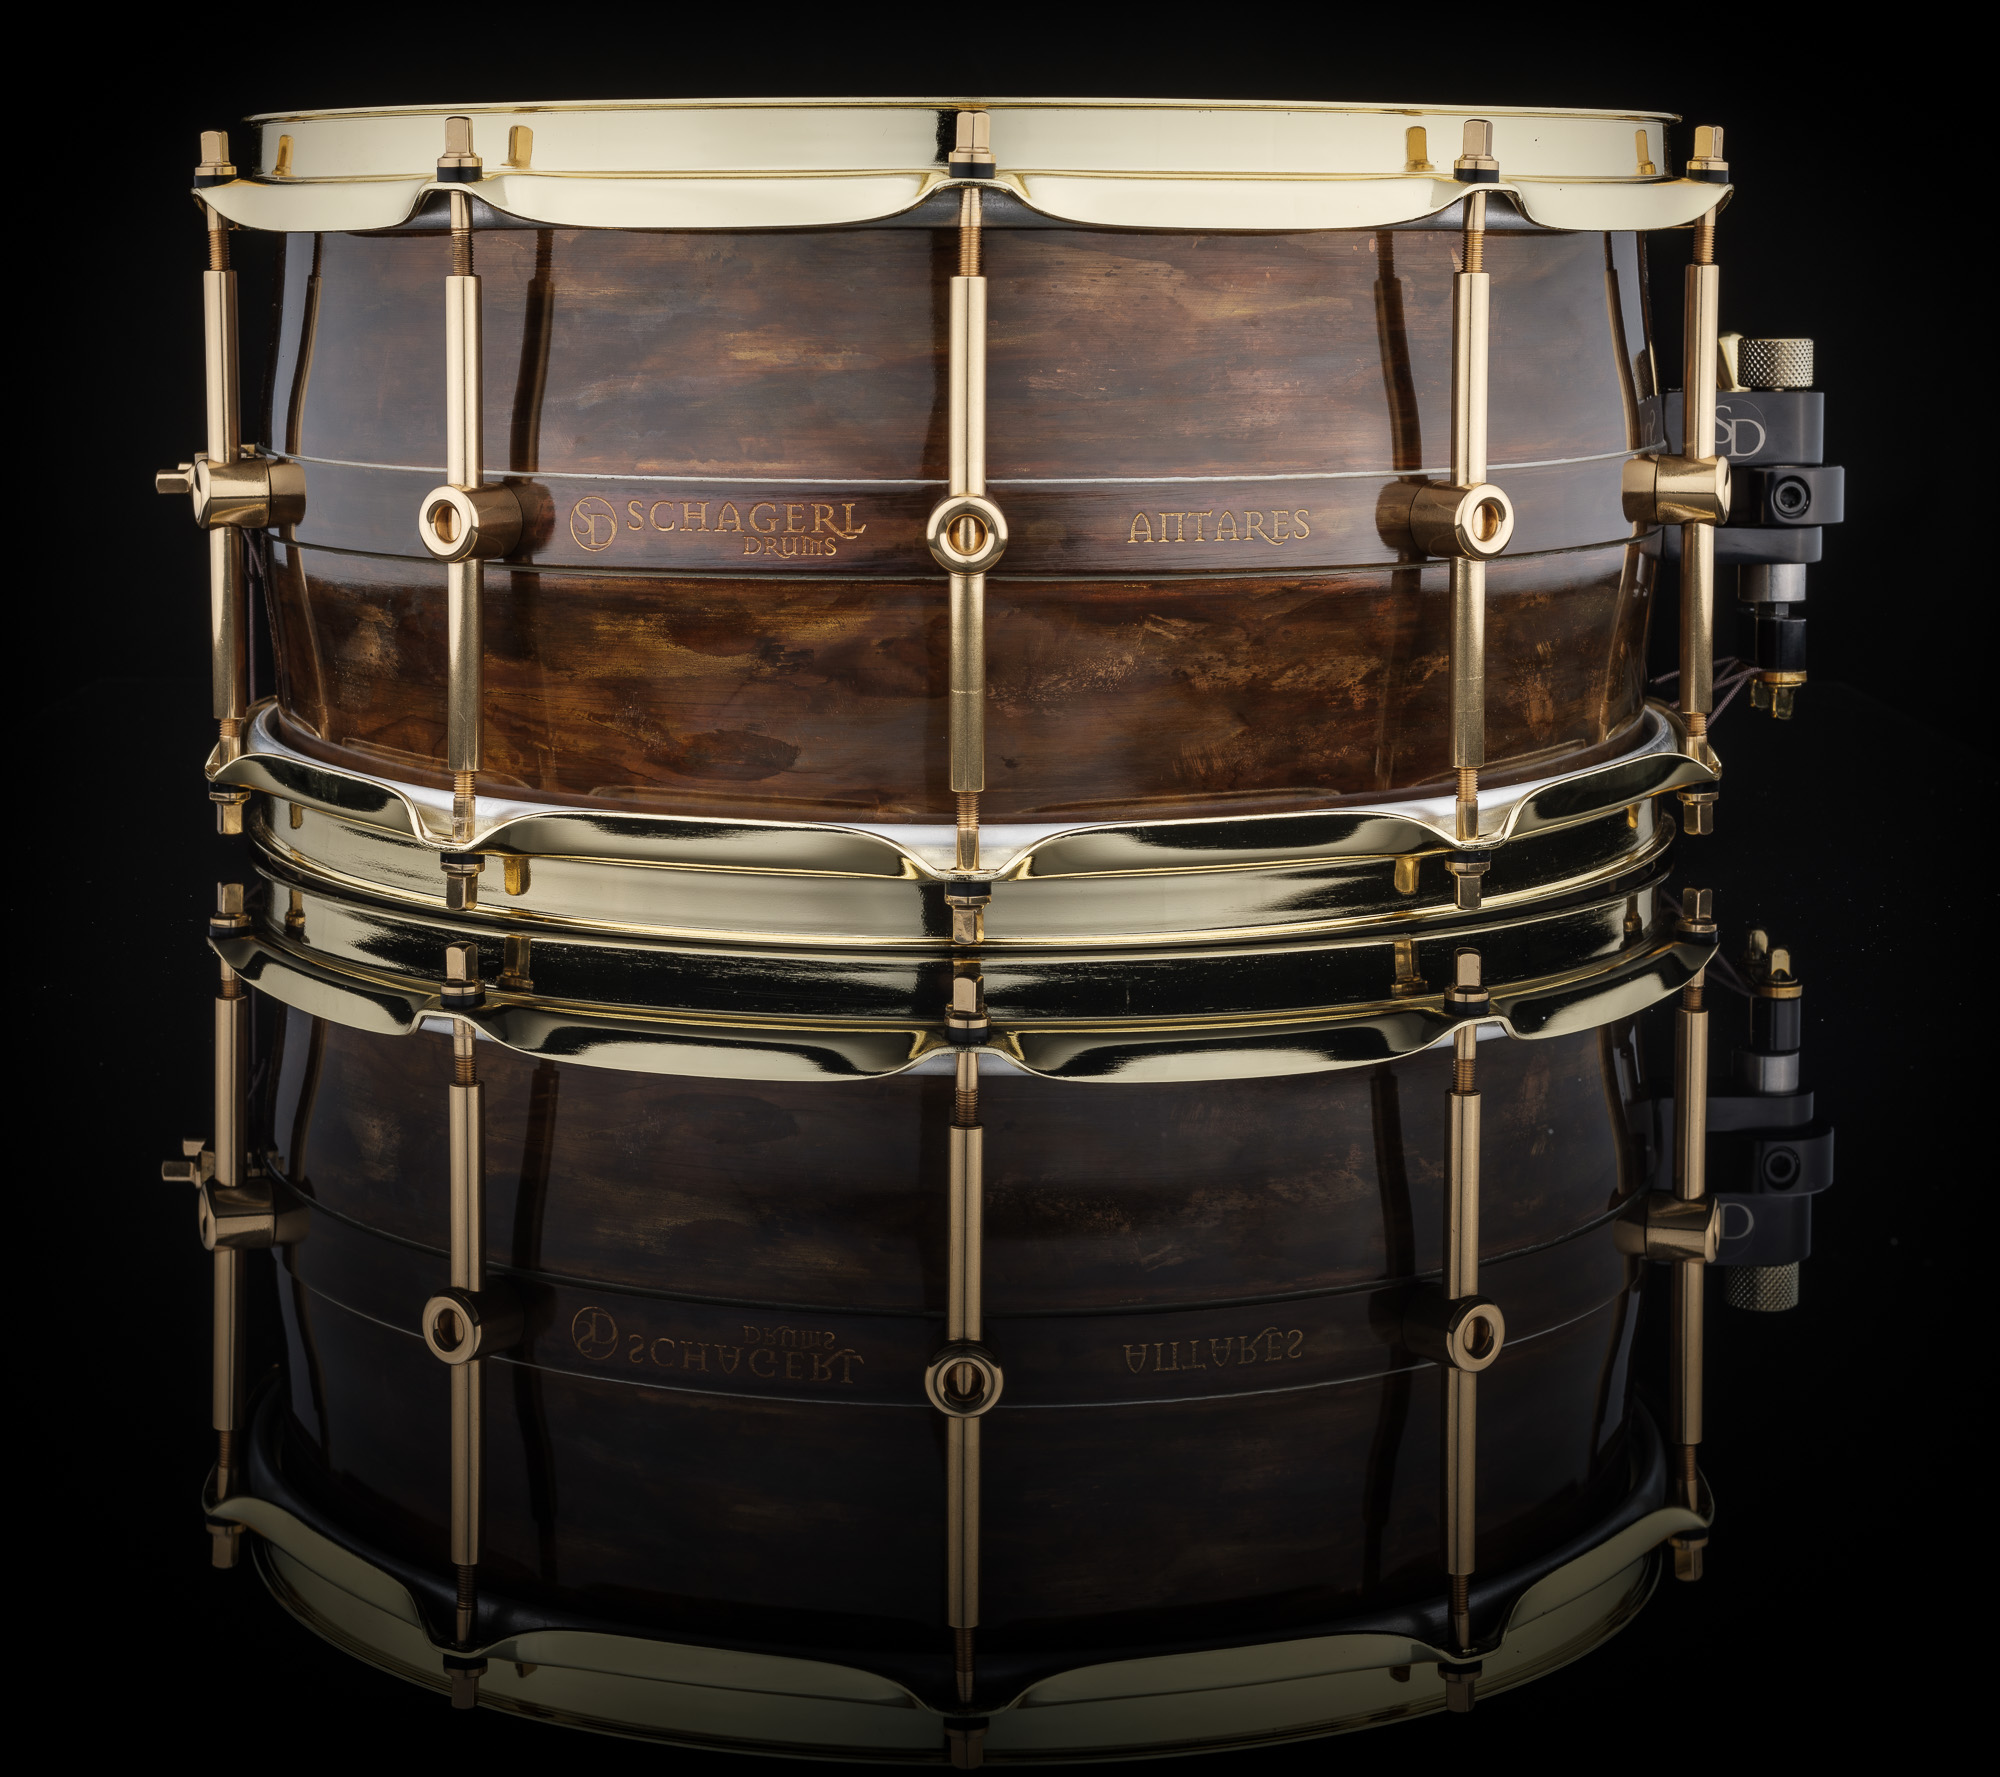 Schagerl Antares Snare Drum 14"x6,5" Brass, Dark Vintage Go